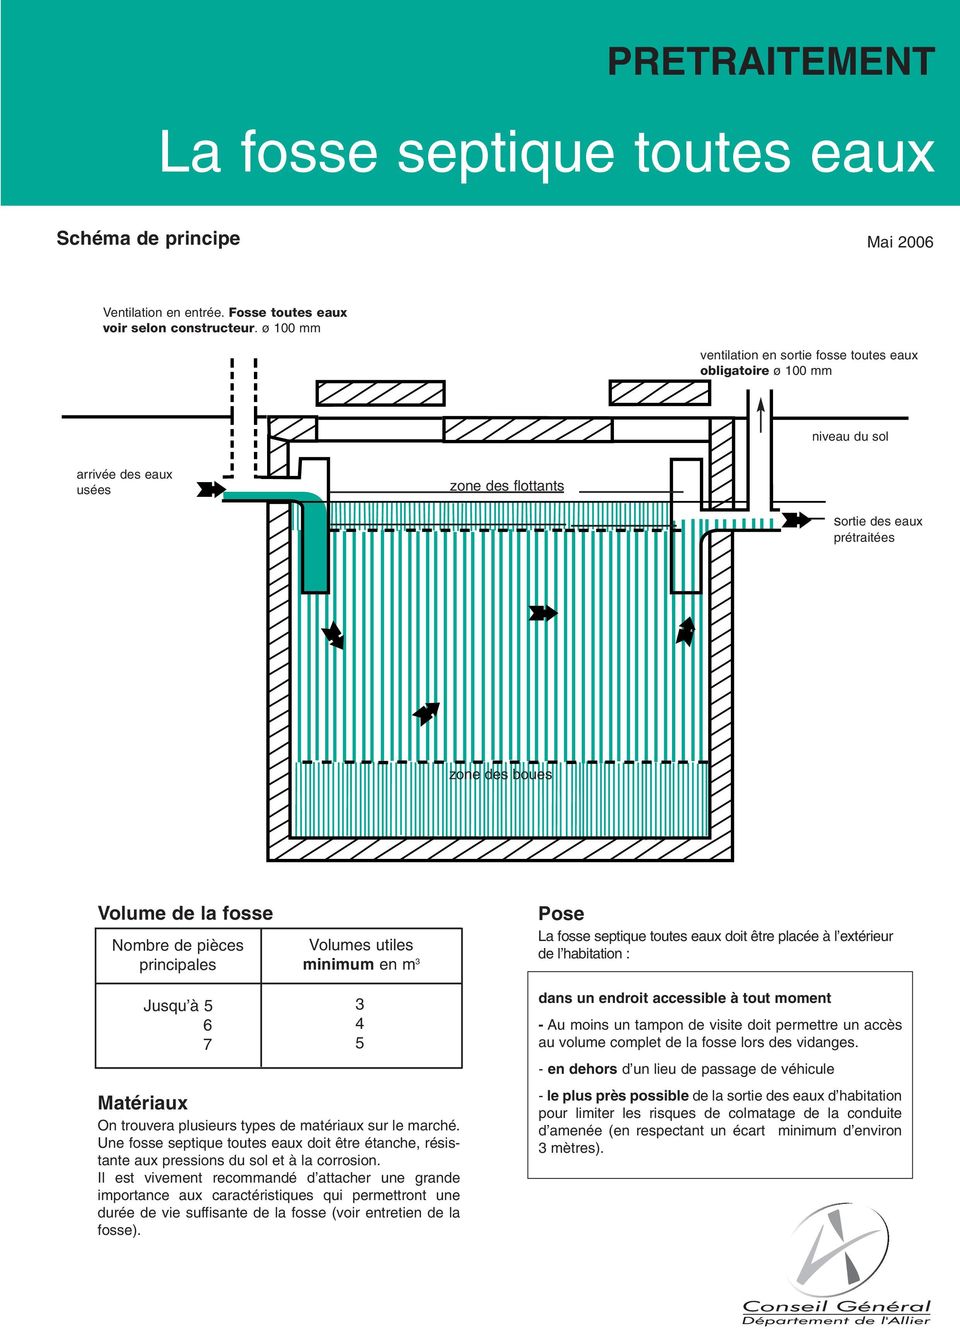 utiles minimum en m 3 La fosse septique toutes eaux doit être placée à l extérieur de l habitation : Jusqu à 5 6 7 Matériaux On trouvera plusieurs types de matériaux sur le marché.